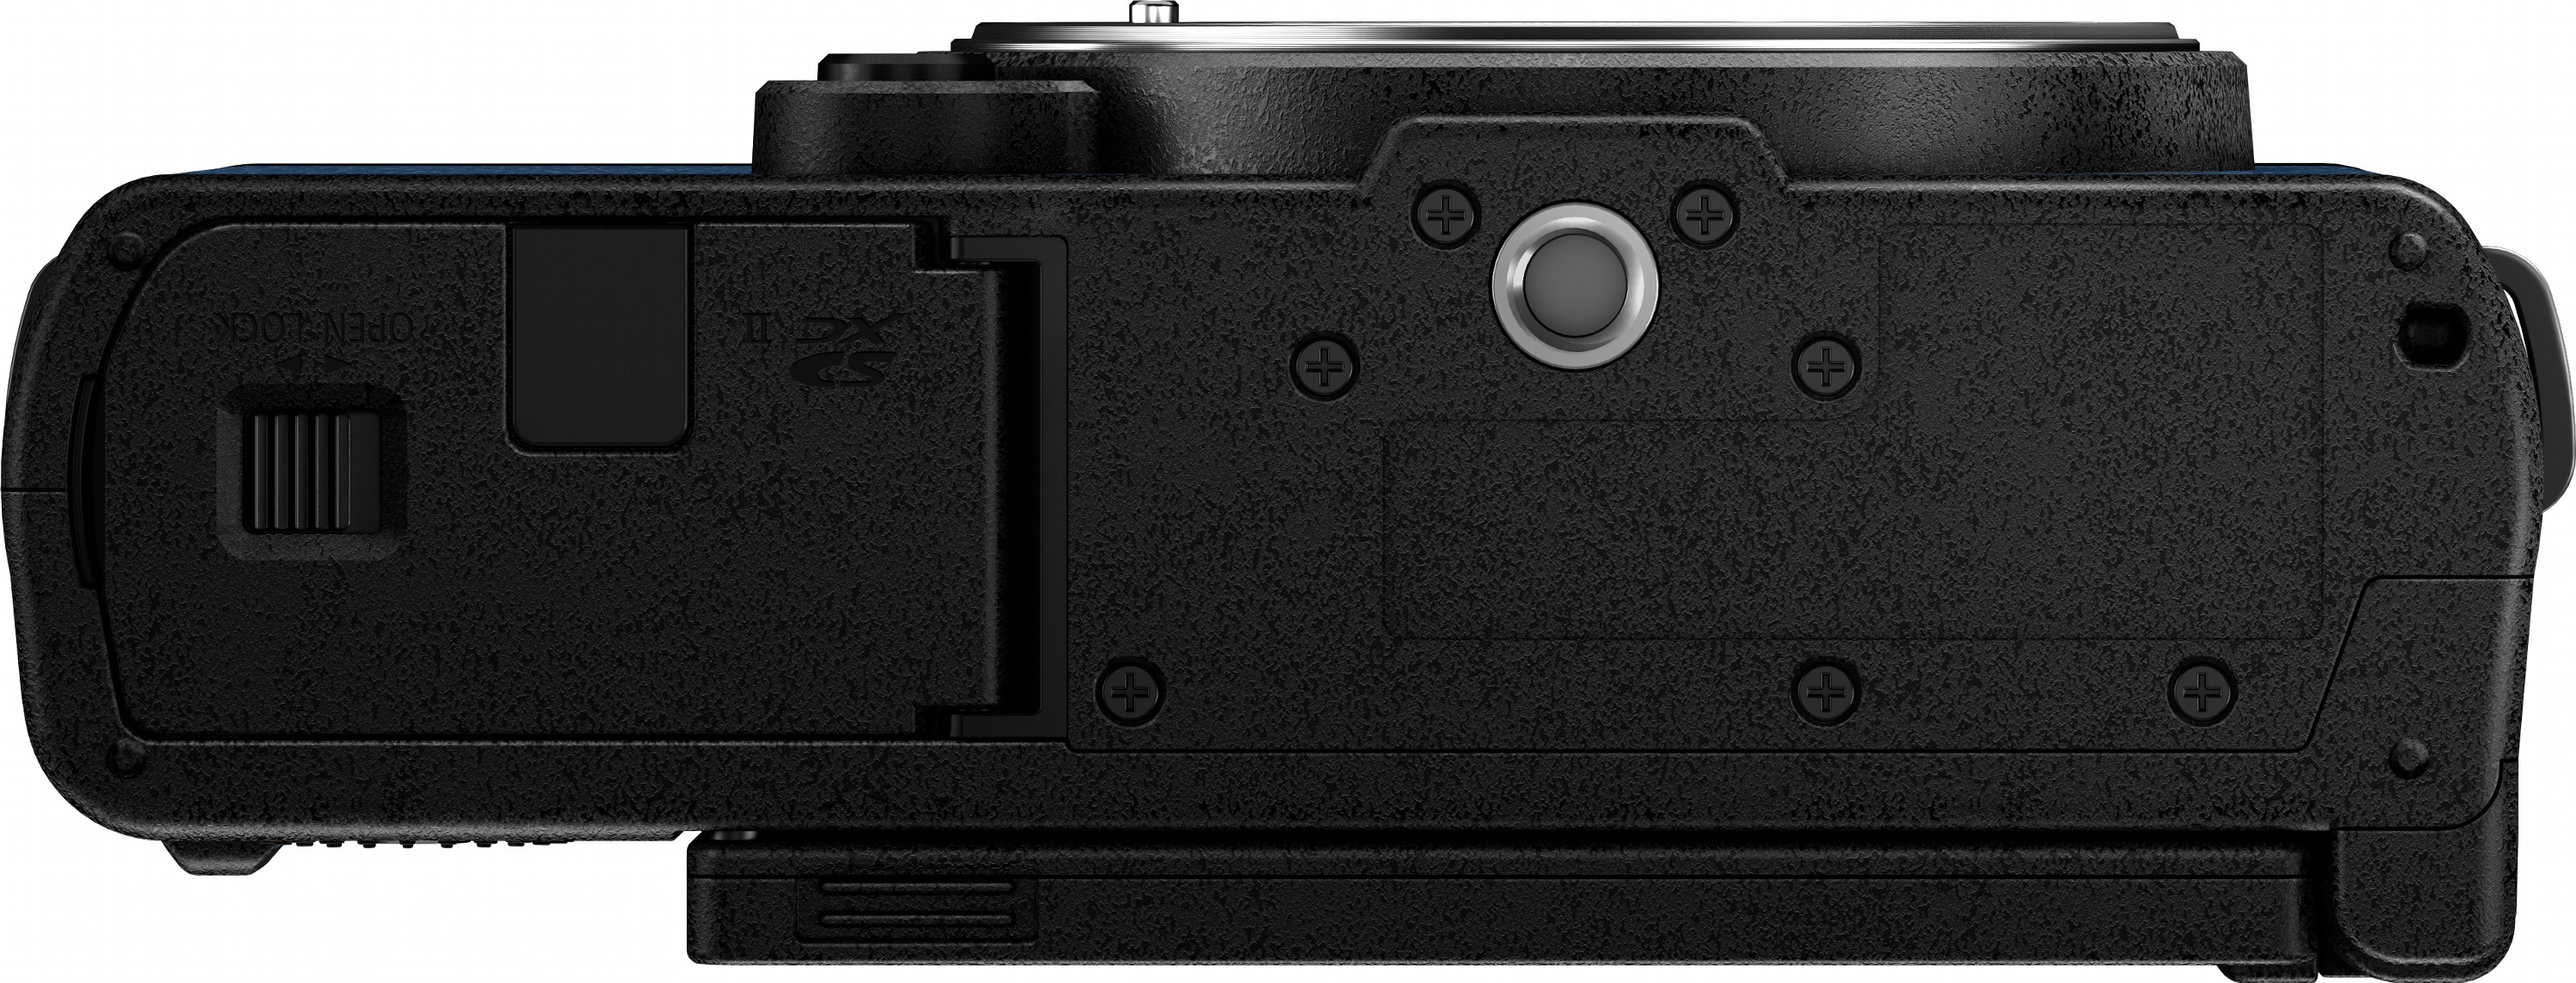 Фотоапарат Panasonic Lumix DC-S9 Body Night Blue (DC-S9E-A)фото9